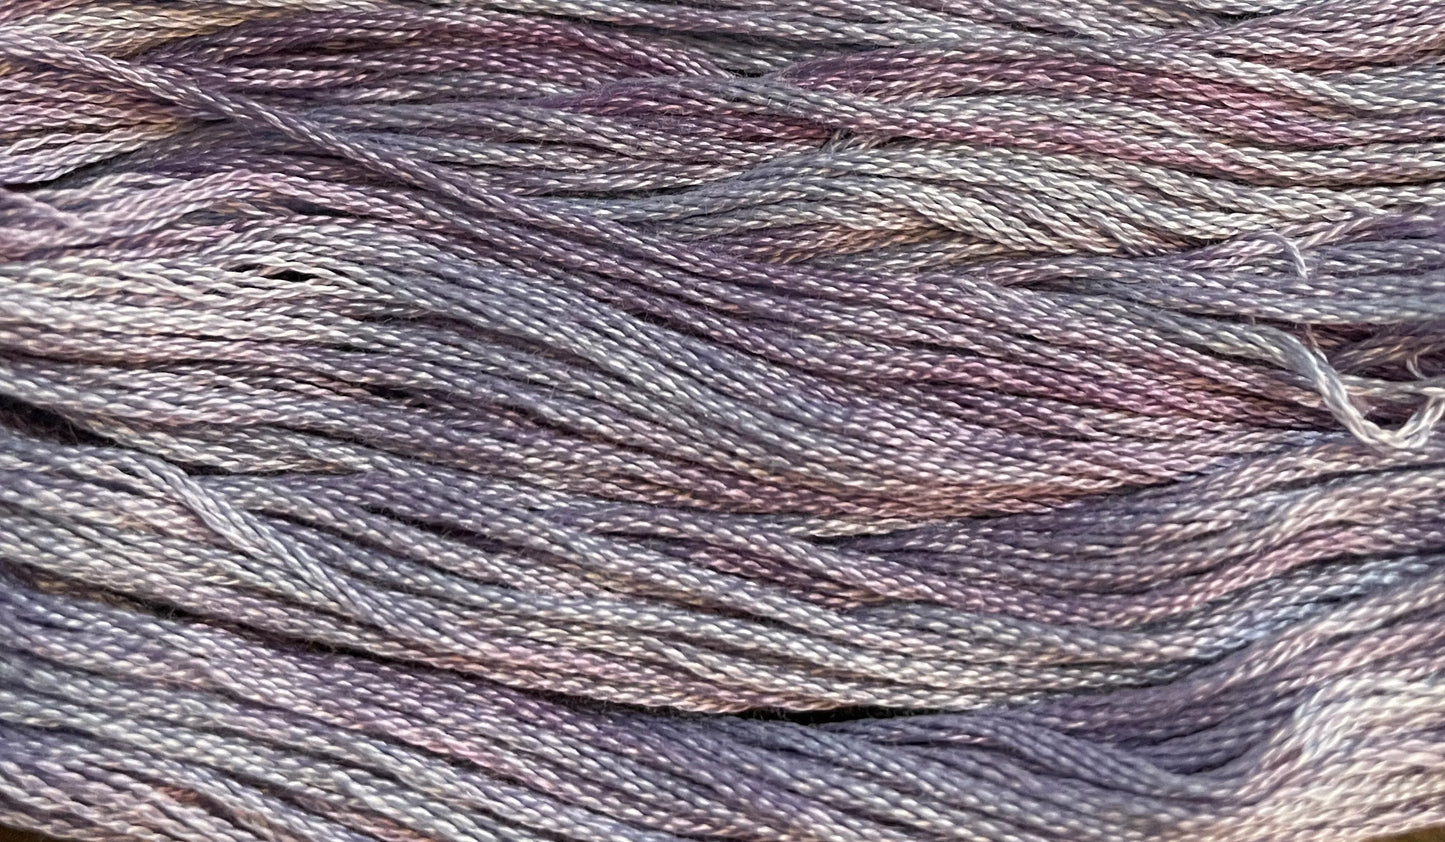 Sugarplum - Gentle Arts Cotton Thread - 5 yard Skein - Cross Stitch Floss, Thread & Floss, Thread & Floss, The Crafty Grimalkin - A Cross Stitch Store